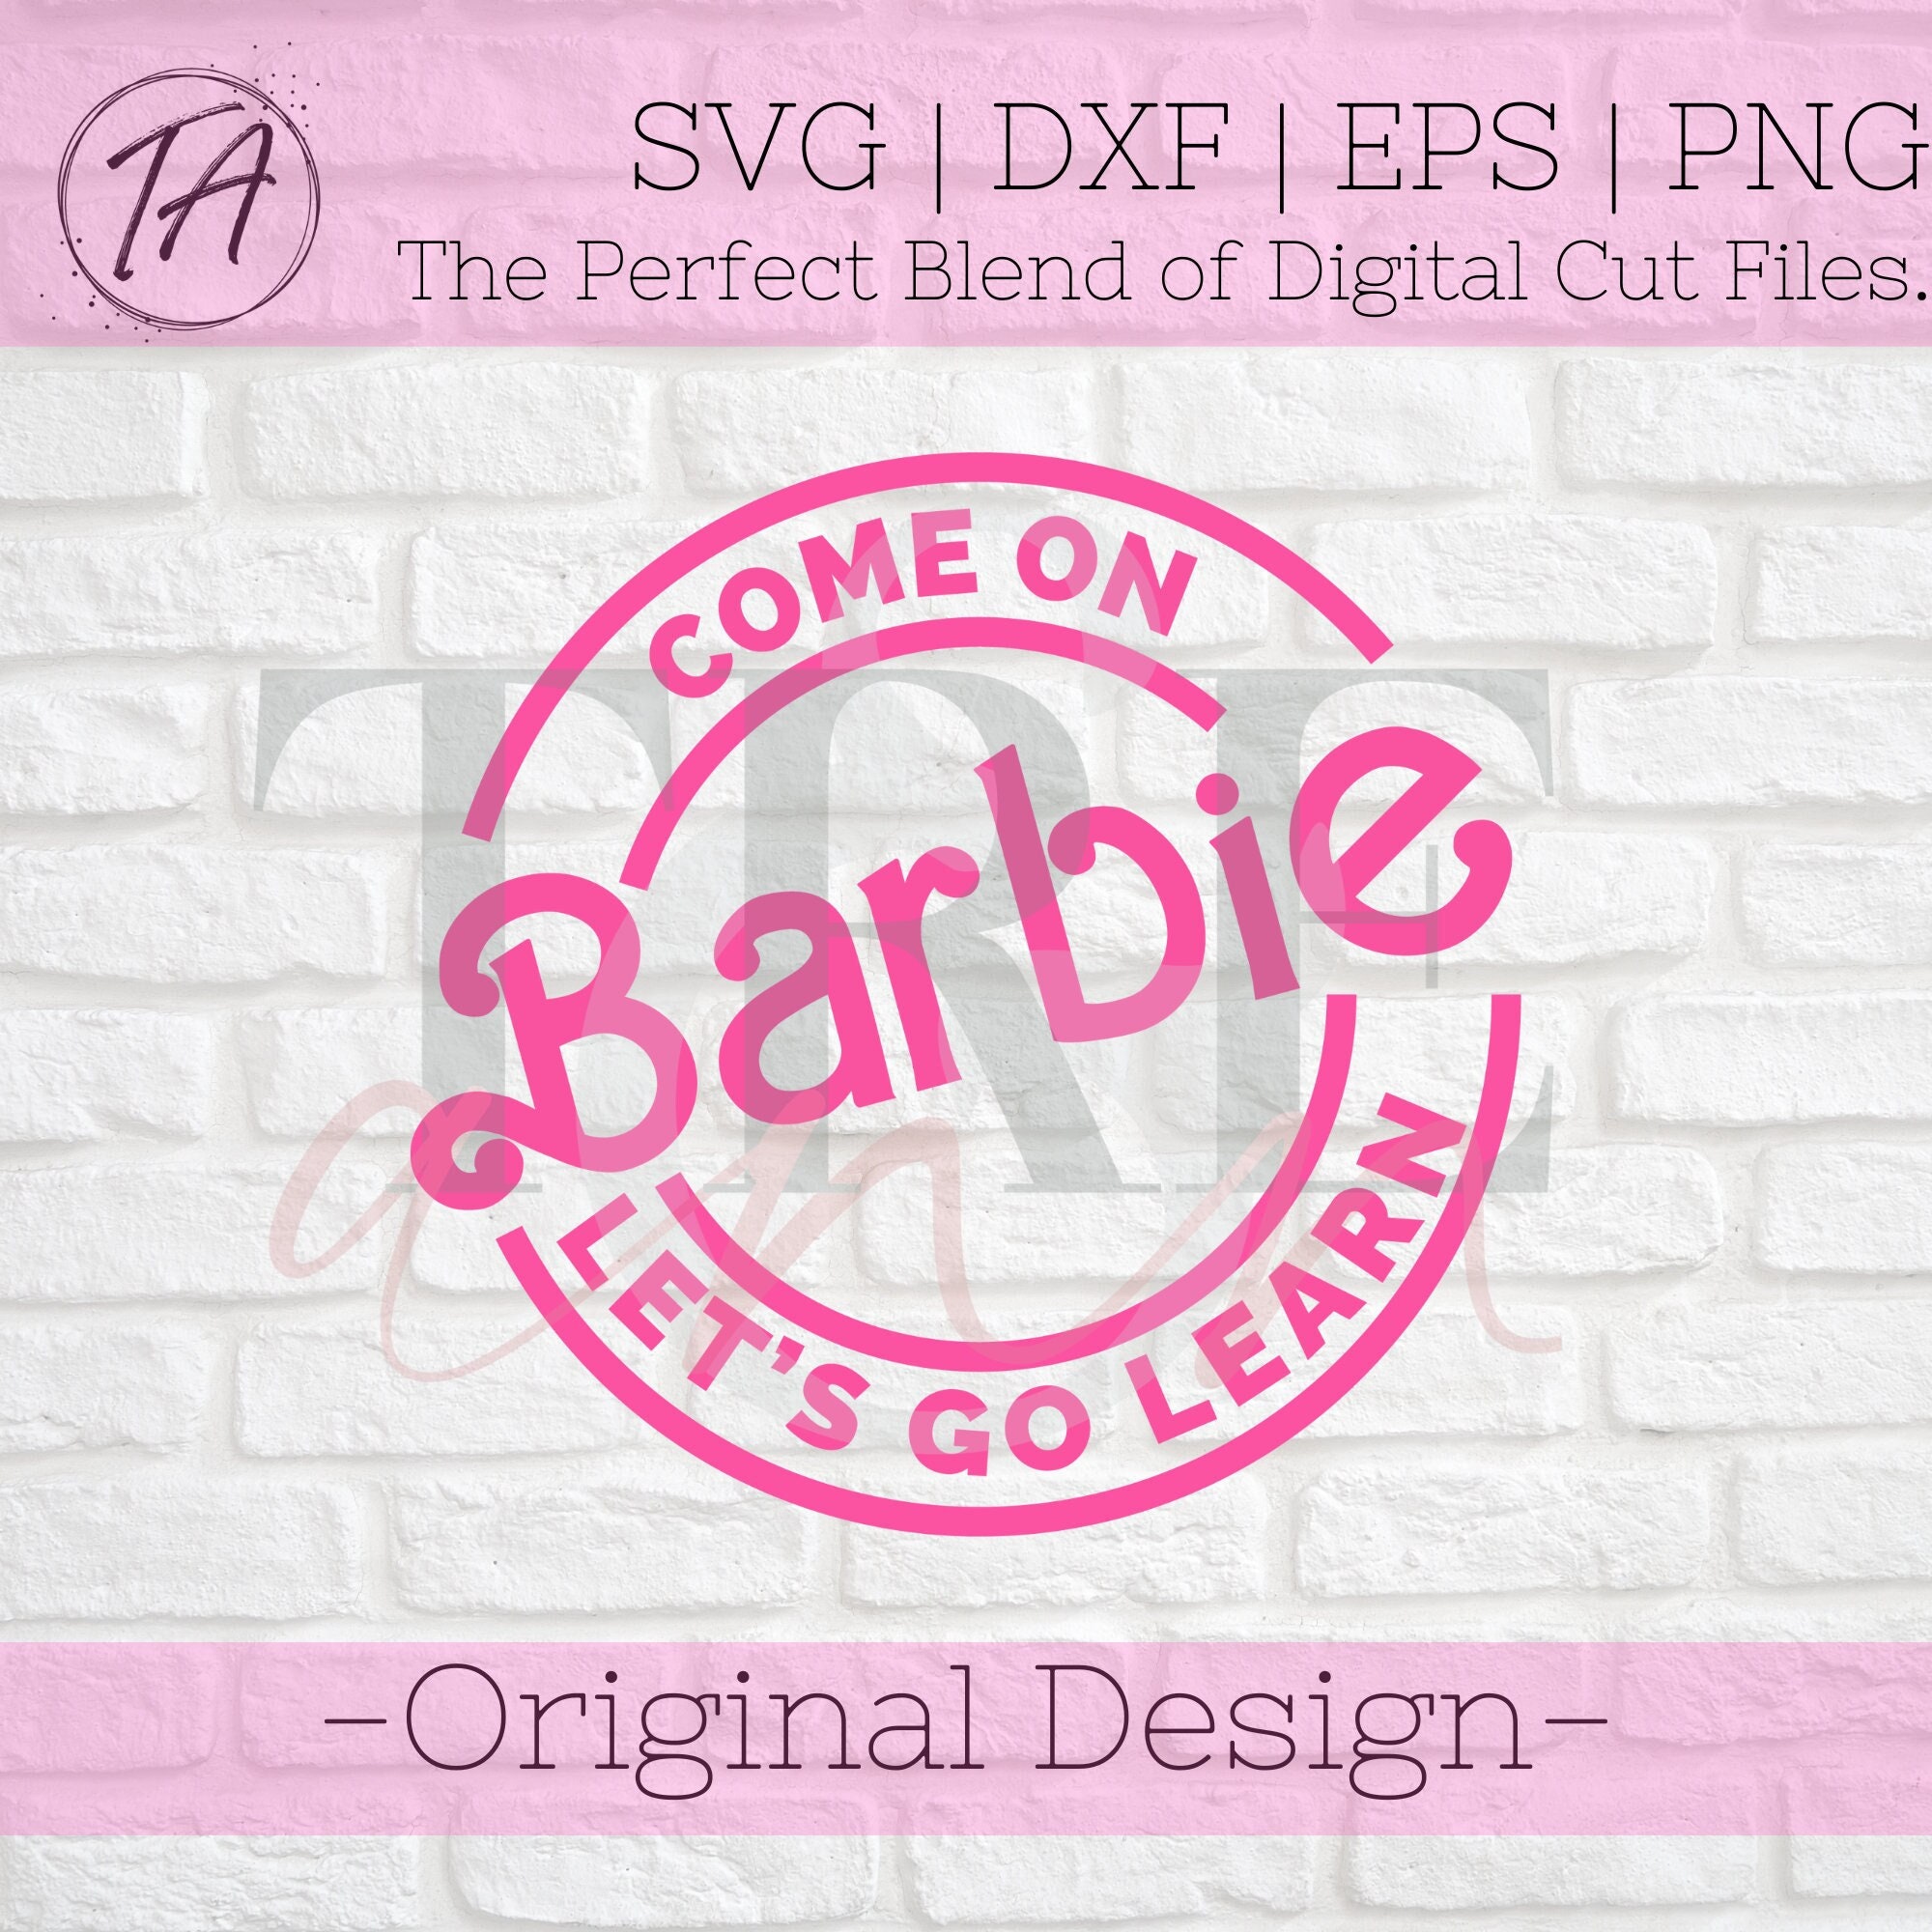 Barbie Doll Clothes Pattern Advance 9939 Vintage Barbie Clothes PDF Instant  Download 